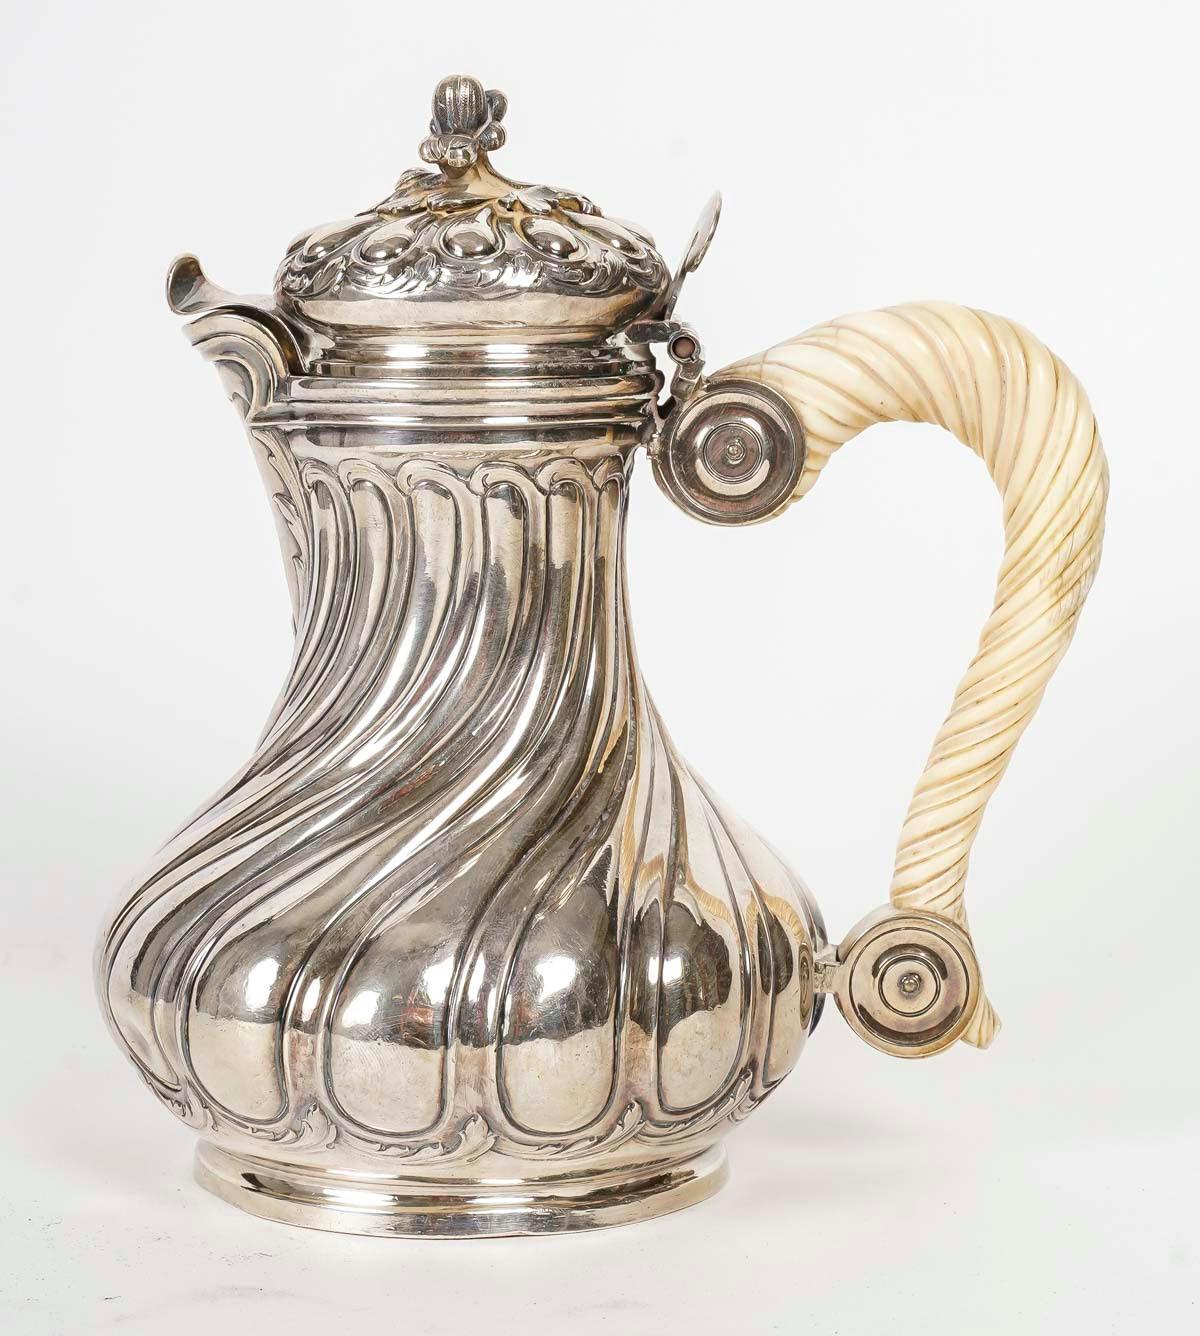 Silberne Kaffeekanne von Boucheron Paris im Stil Louis XV, 19. Jahrhundert.

Silberne Kaffeekanne im Louis XV-Stil, 19. Jahrhundert, aus dem Hause Boucheron.
h: 18cm, B: 18cm, T: 12cm